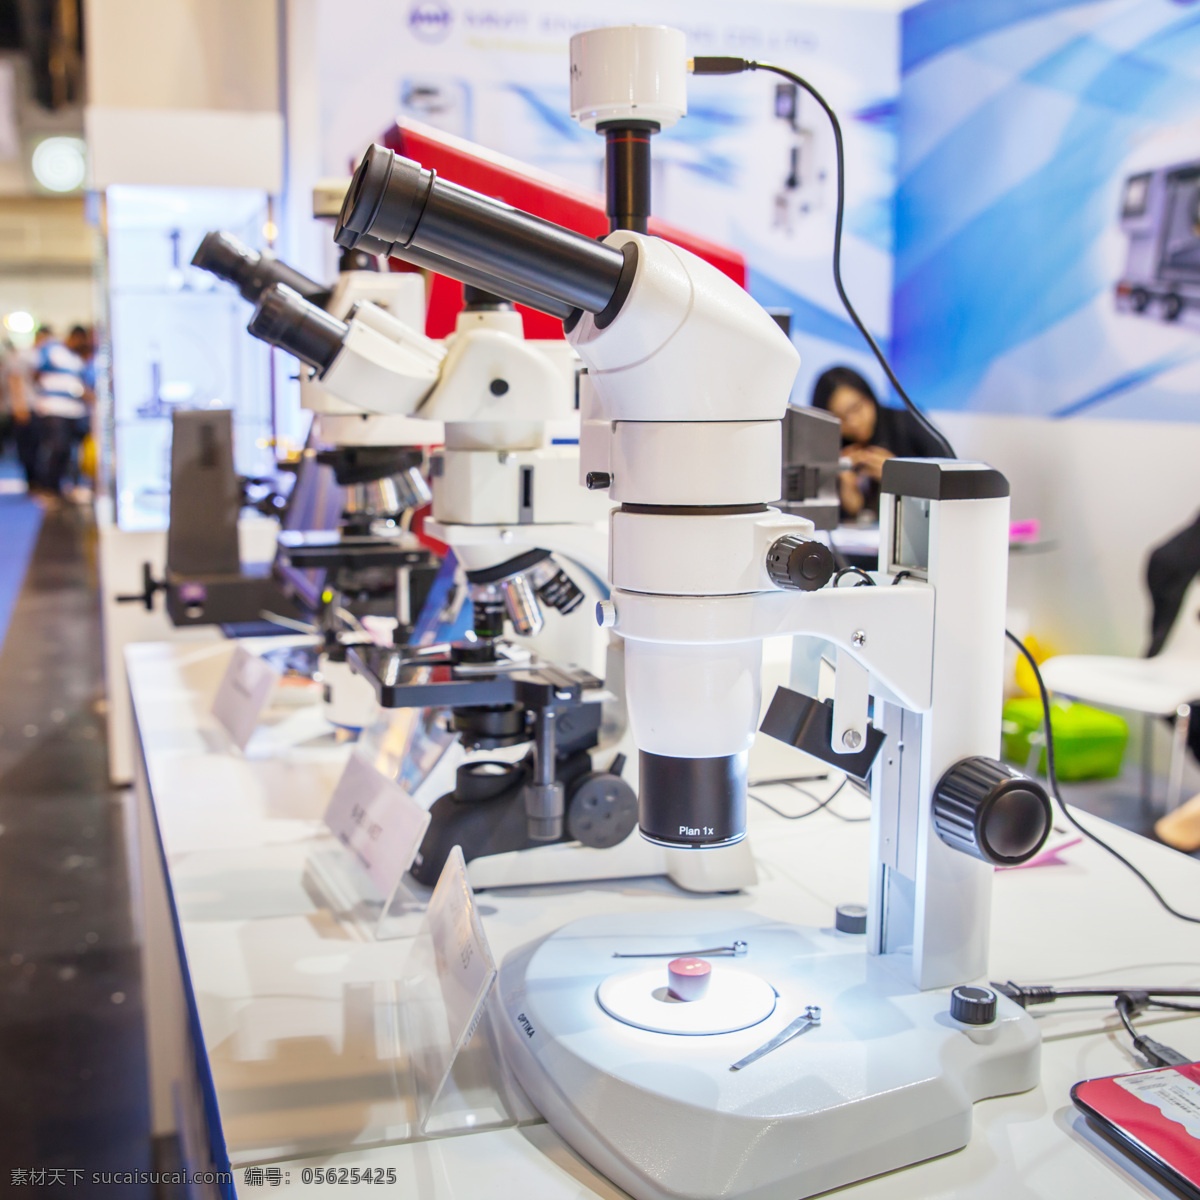 实验室 里 显微镜 化学素材 化学试验 科学研究 科技图片 现代科技